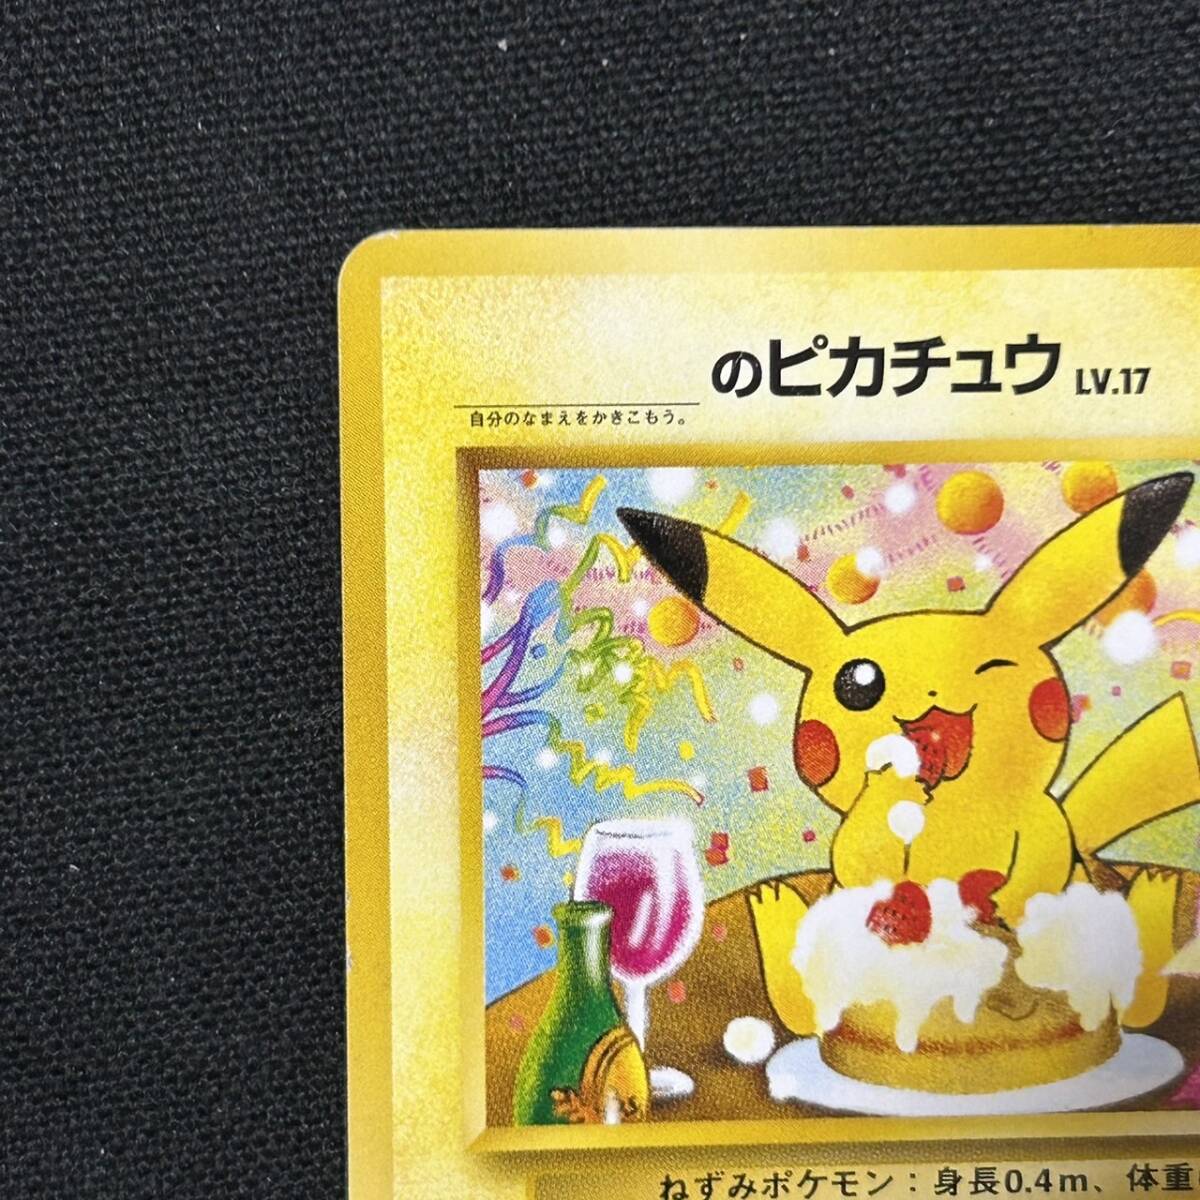 o...... Пикачу _. Пикачу LV.17 старый задняя поверхность Pokemon карта стал разделение No.025 6 шт промо 1 иен старт 